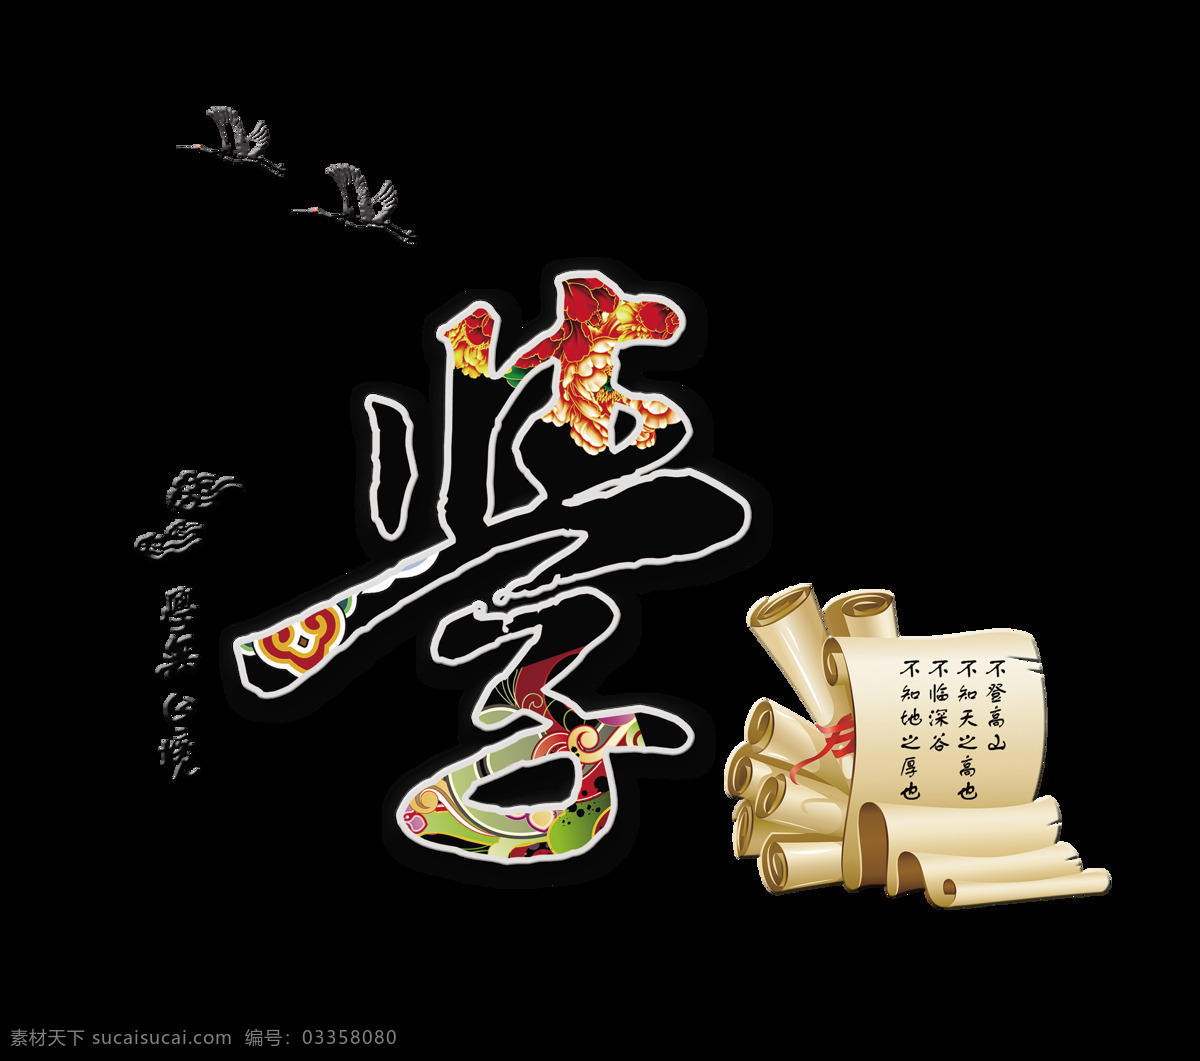 学习 学无止境 中国 风 艺术 字 字体 中国风 古典 文化 学海无涯 艺术字 海报 古风 传统